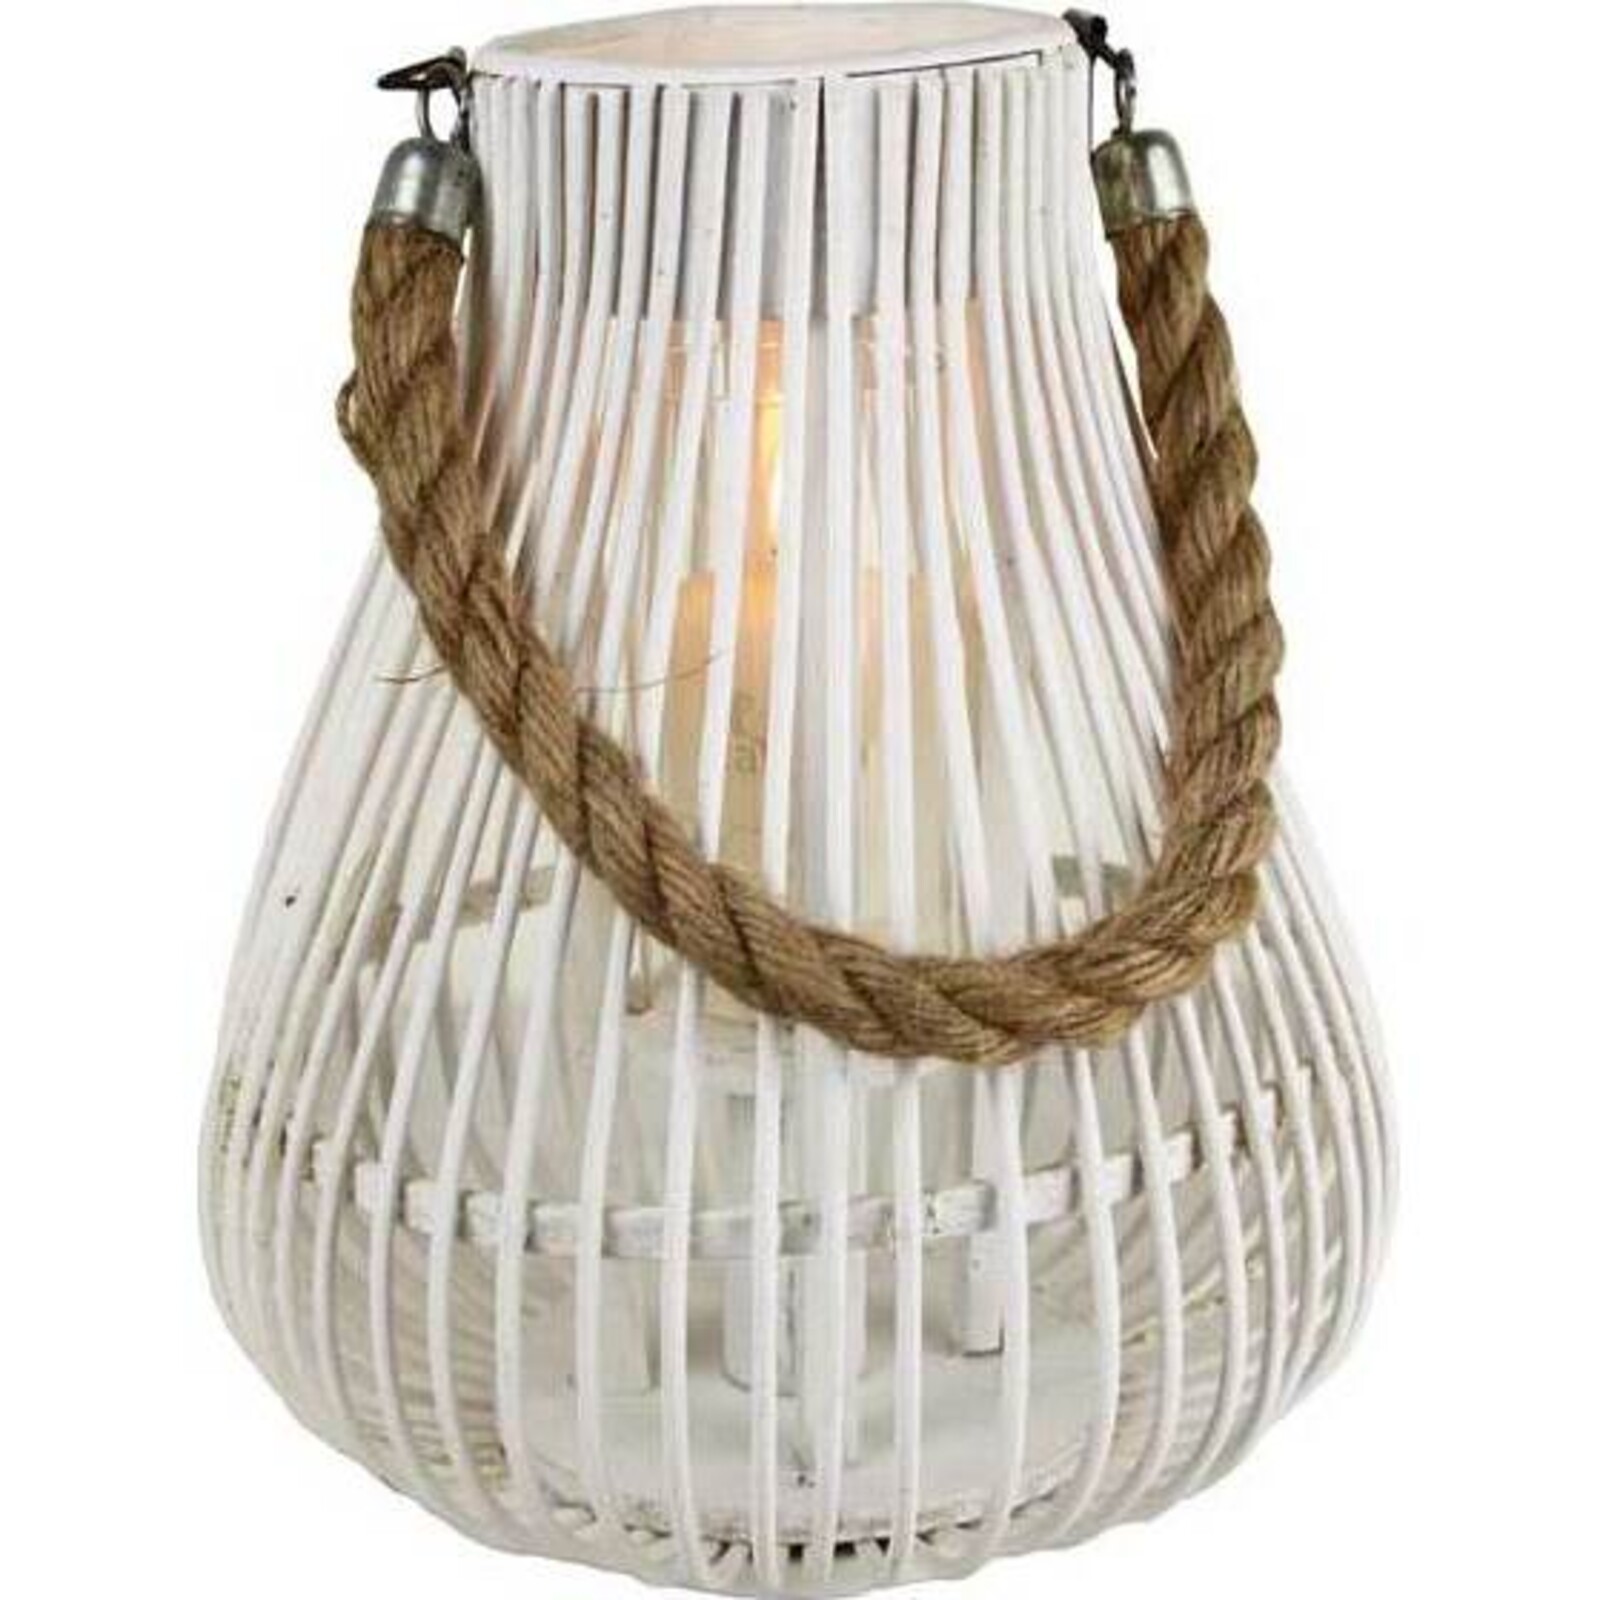 Wicker Lantern Bulb